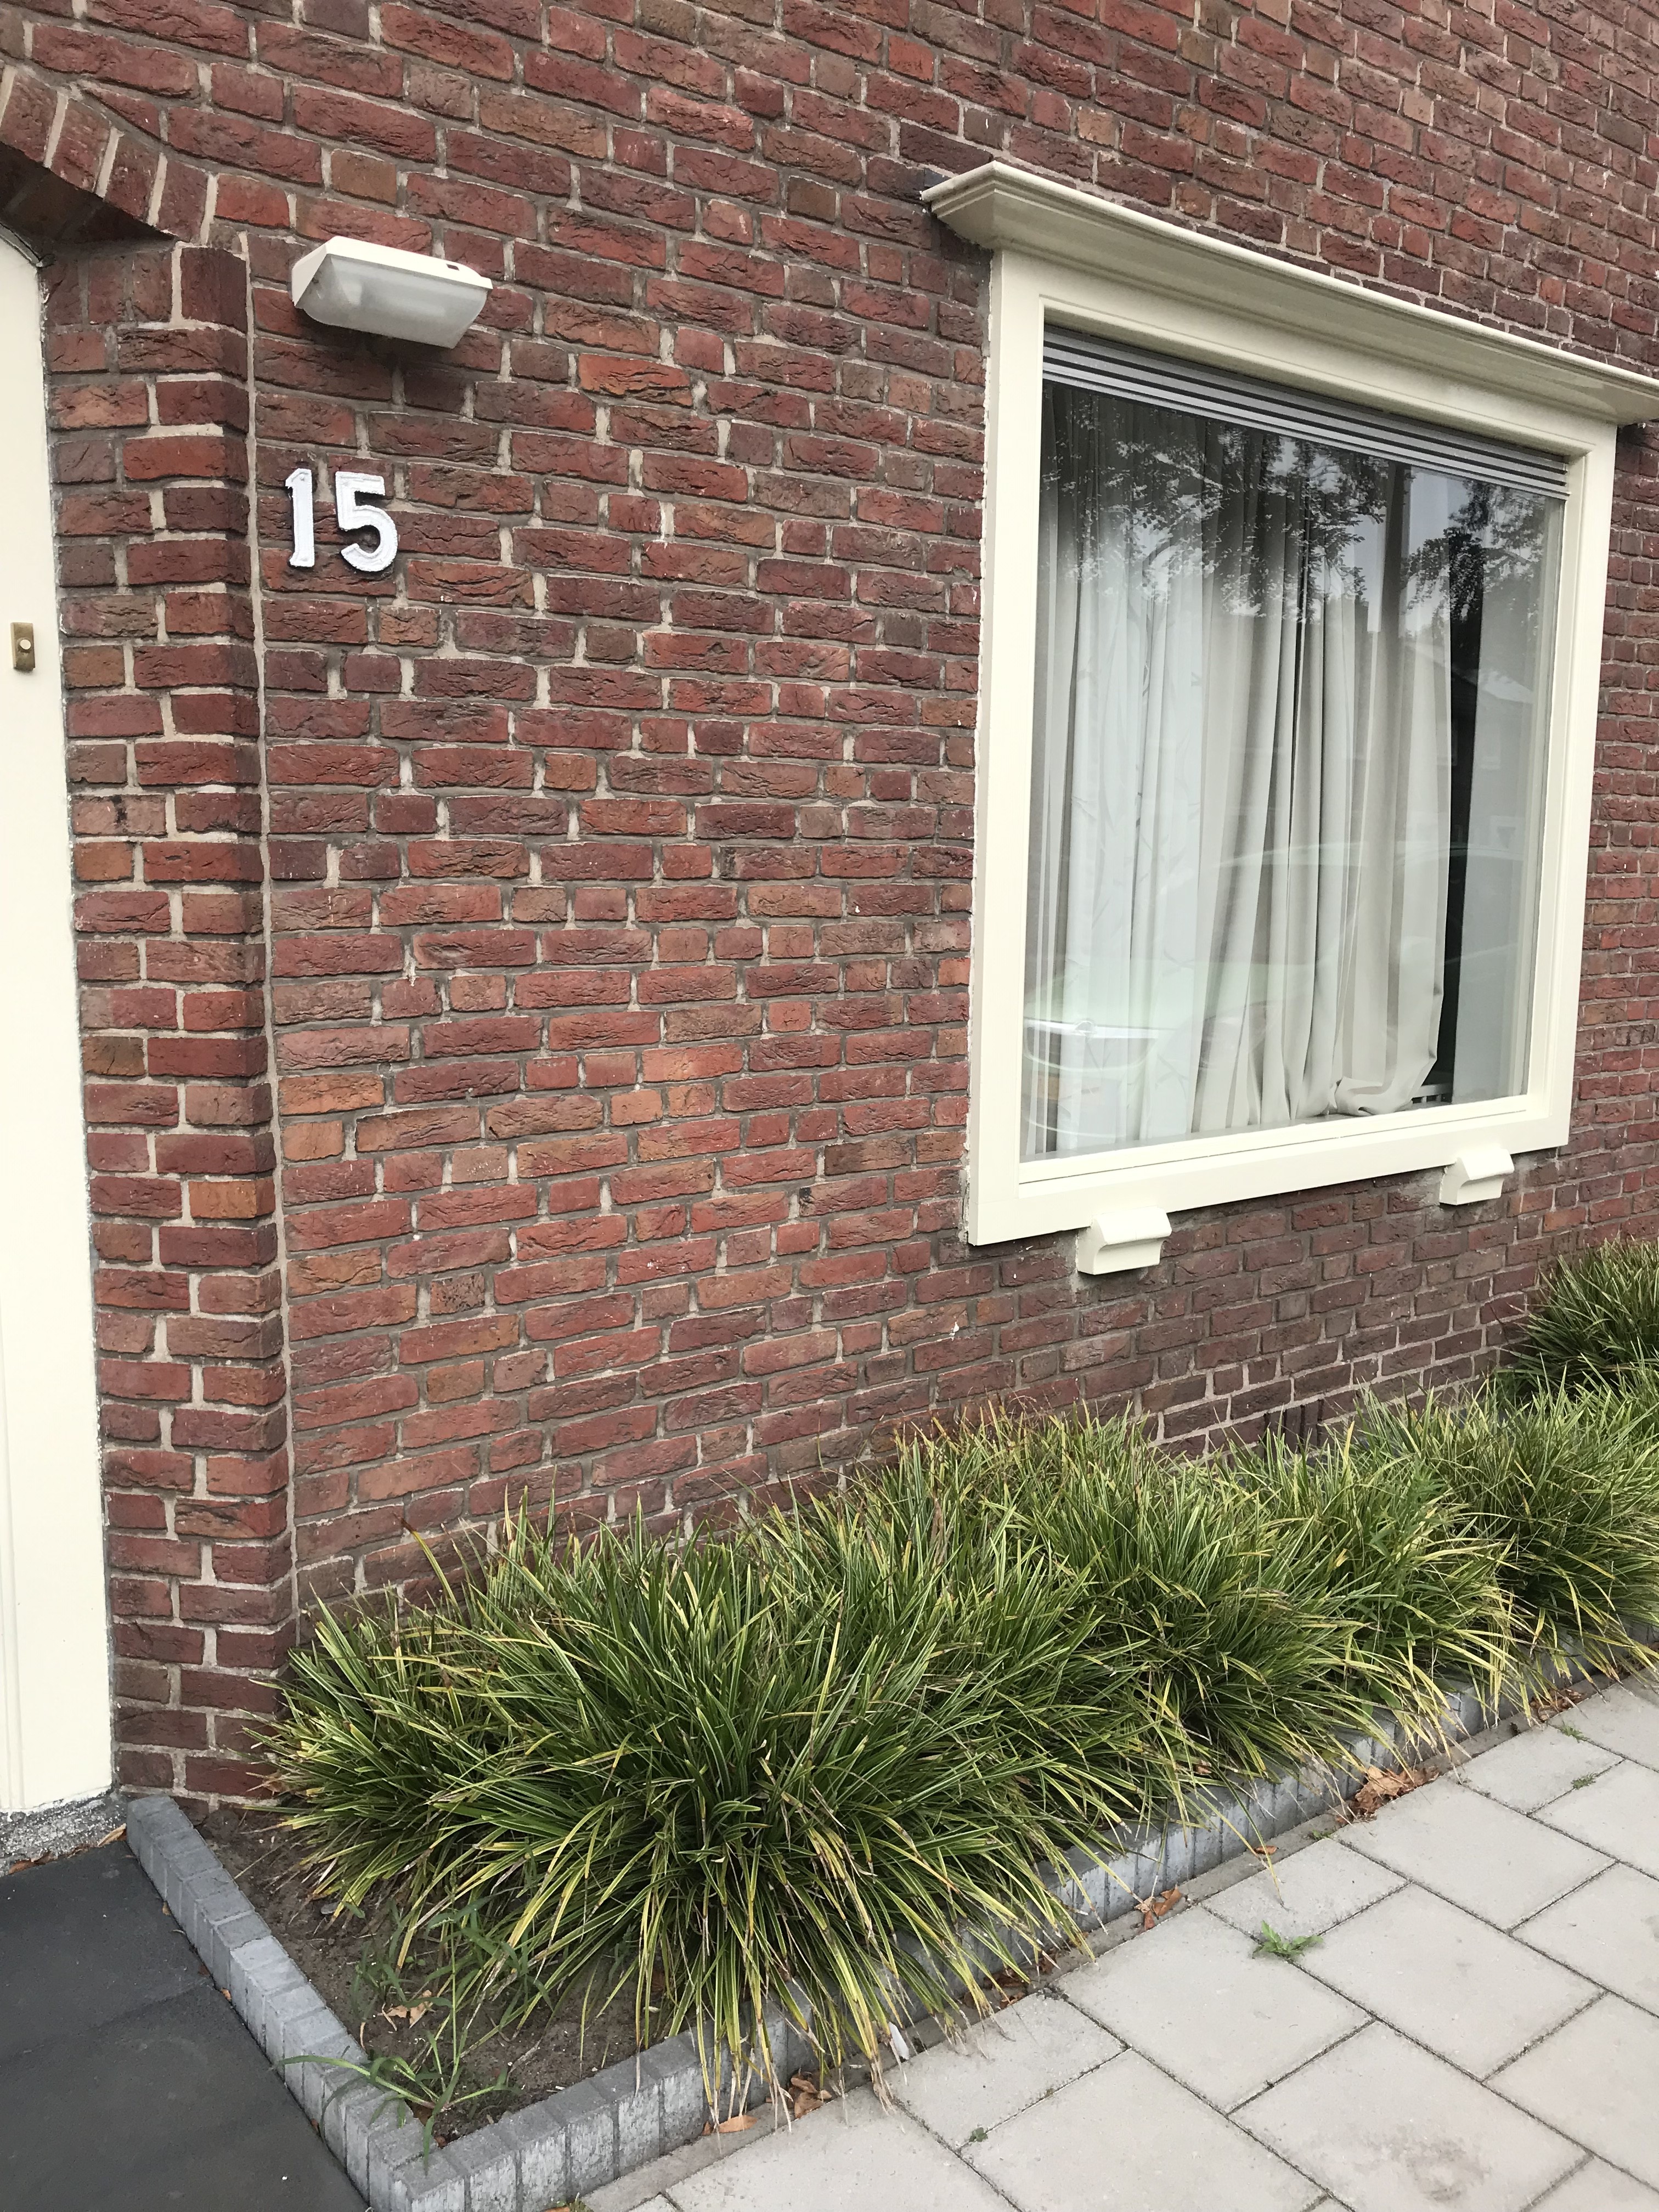 Beatrixlaan 15, 4731 KJ Oudenbosch, Nederland